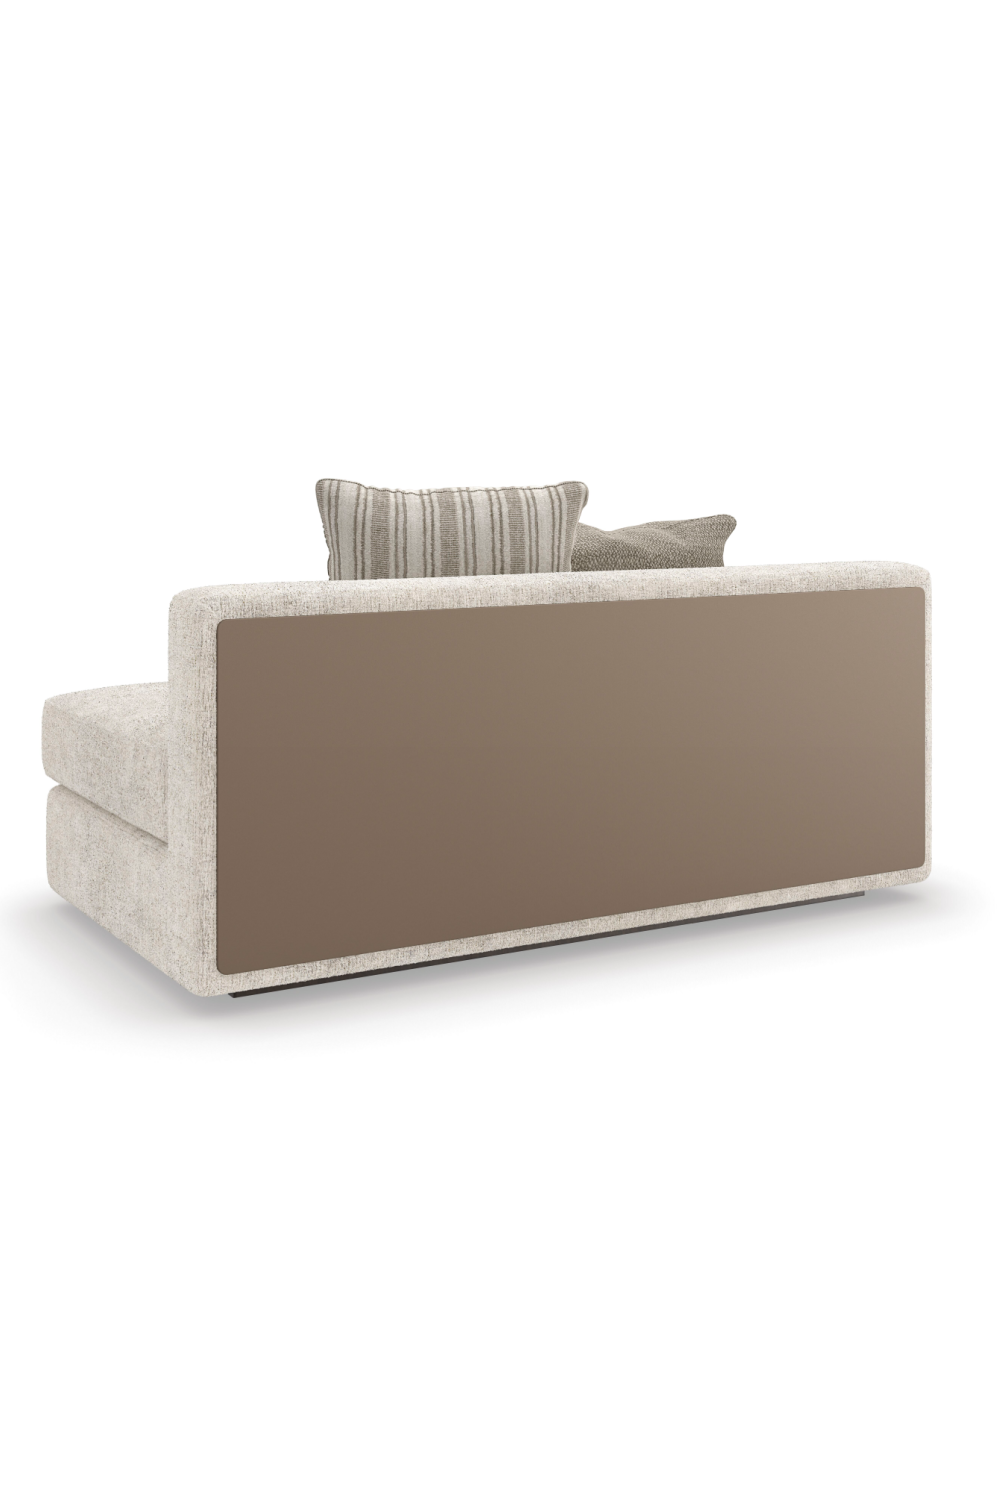 Cream Minimalist Sectional Sofa | Caracole Unity | Oroa.com